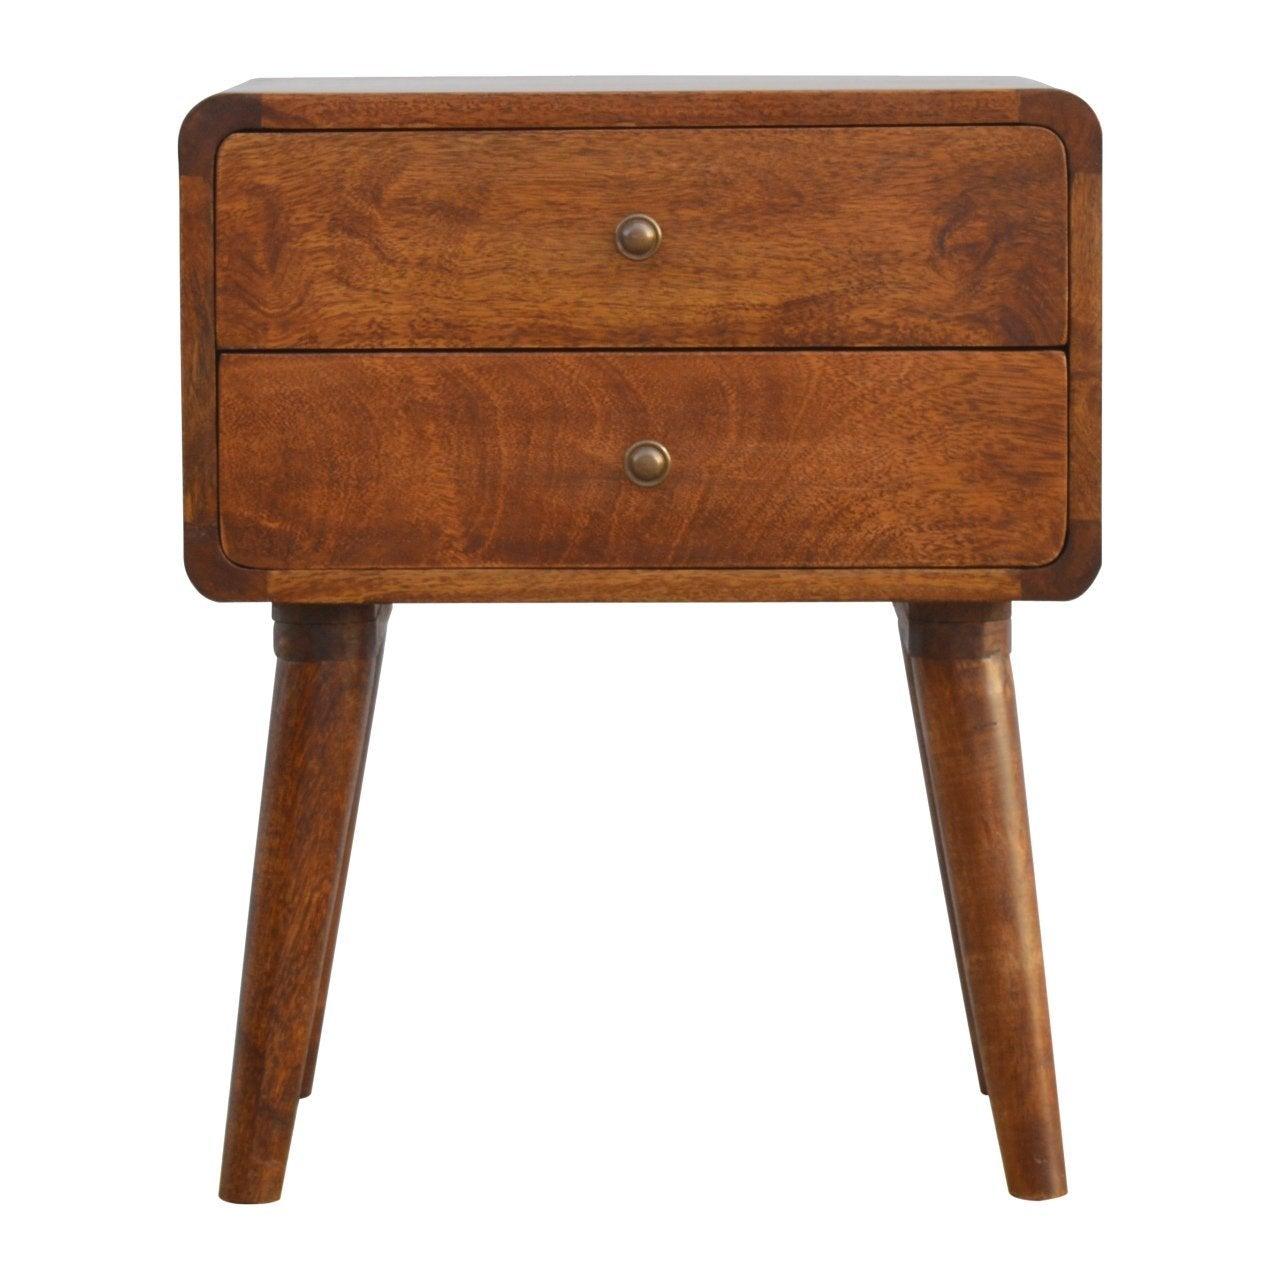 Curved chestnut bedside table - crimblefest furniture - image 1